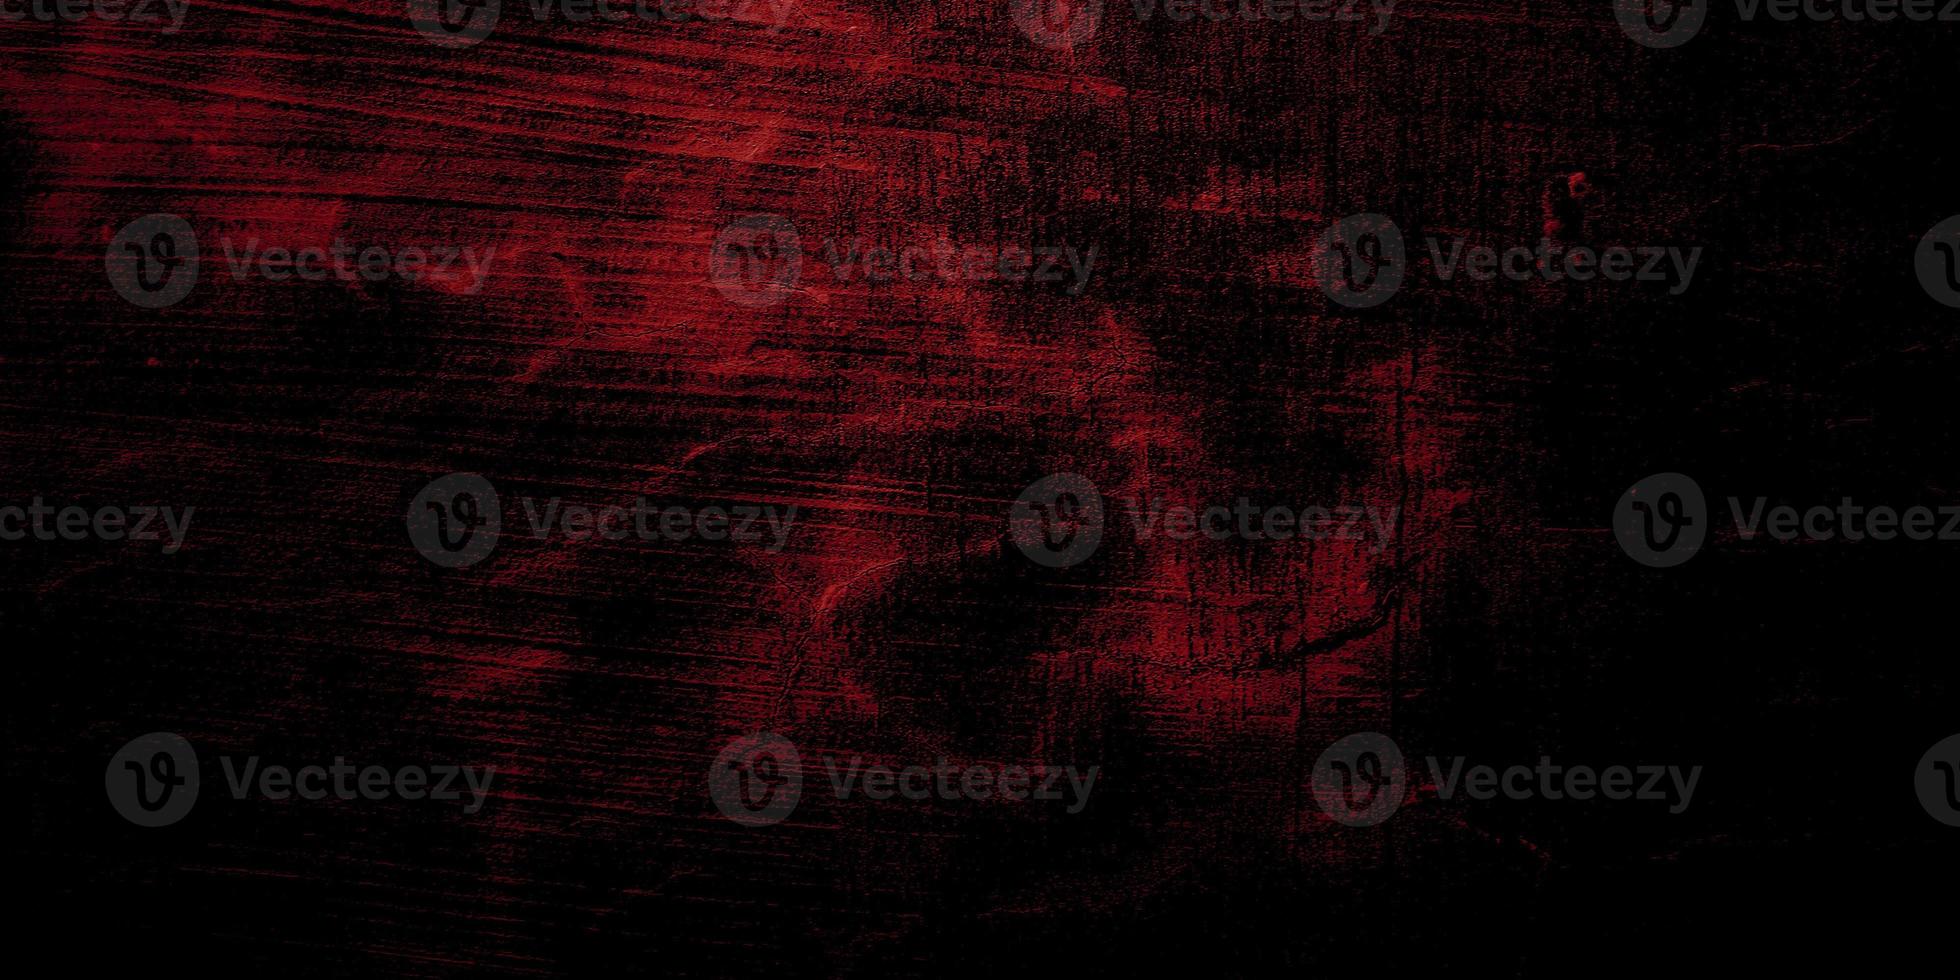 fundo de terror vermelho e preto. grunge escuro textura vermelha concreto foto